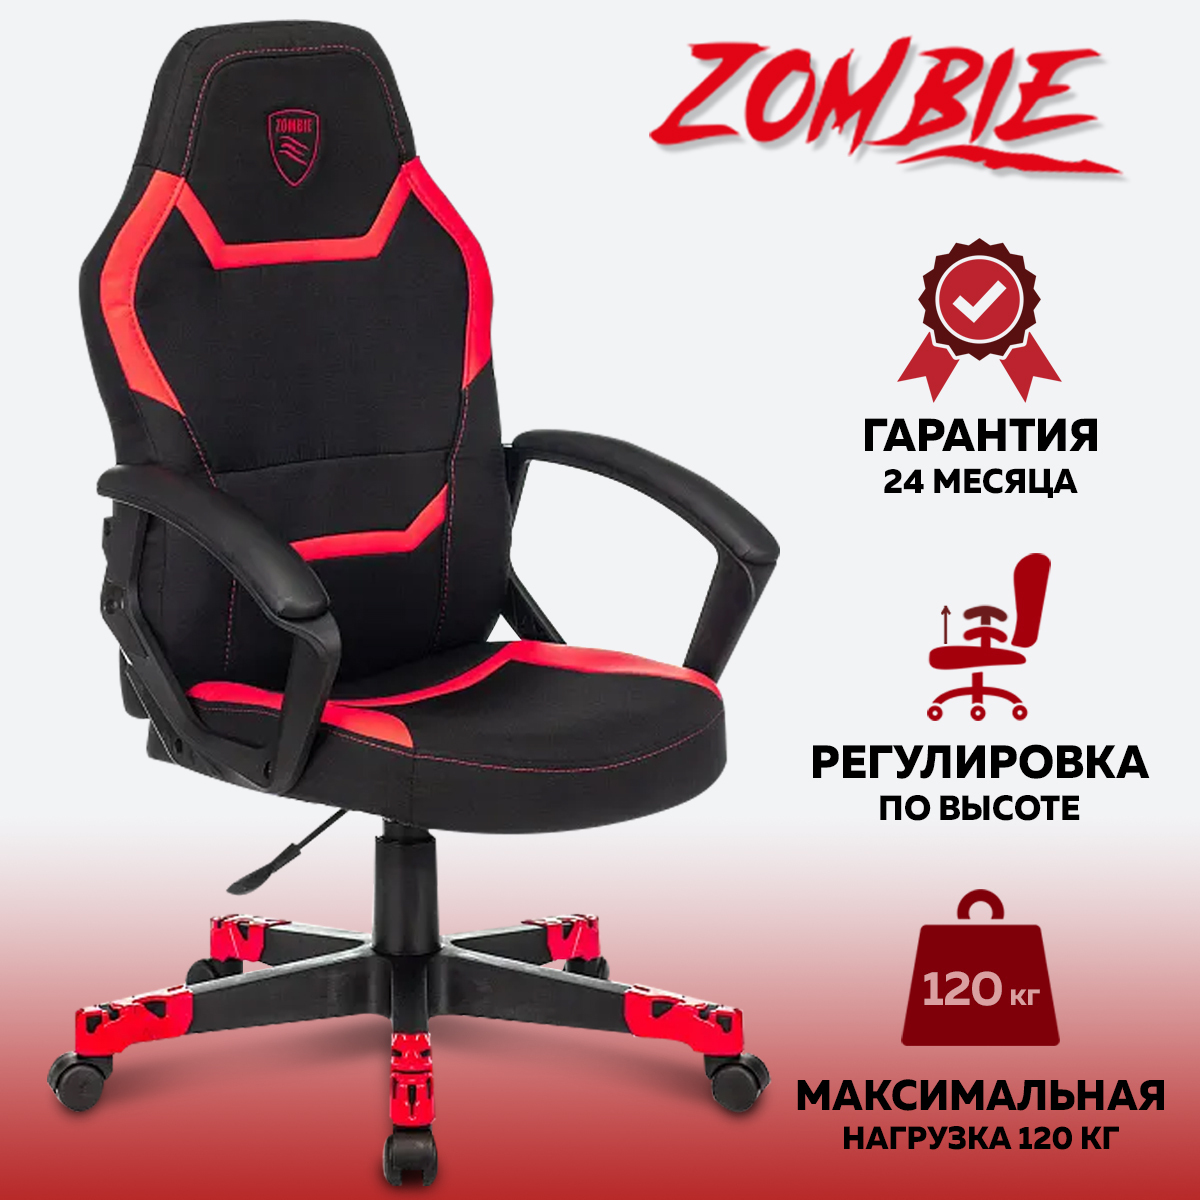 Кресло Zombie 10 высота спинки